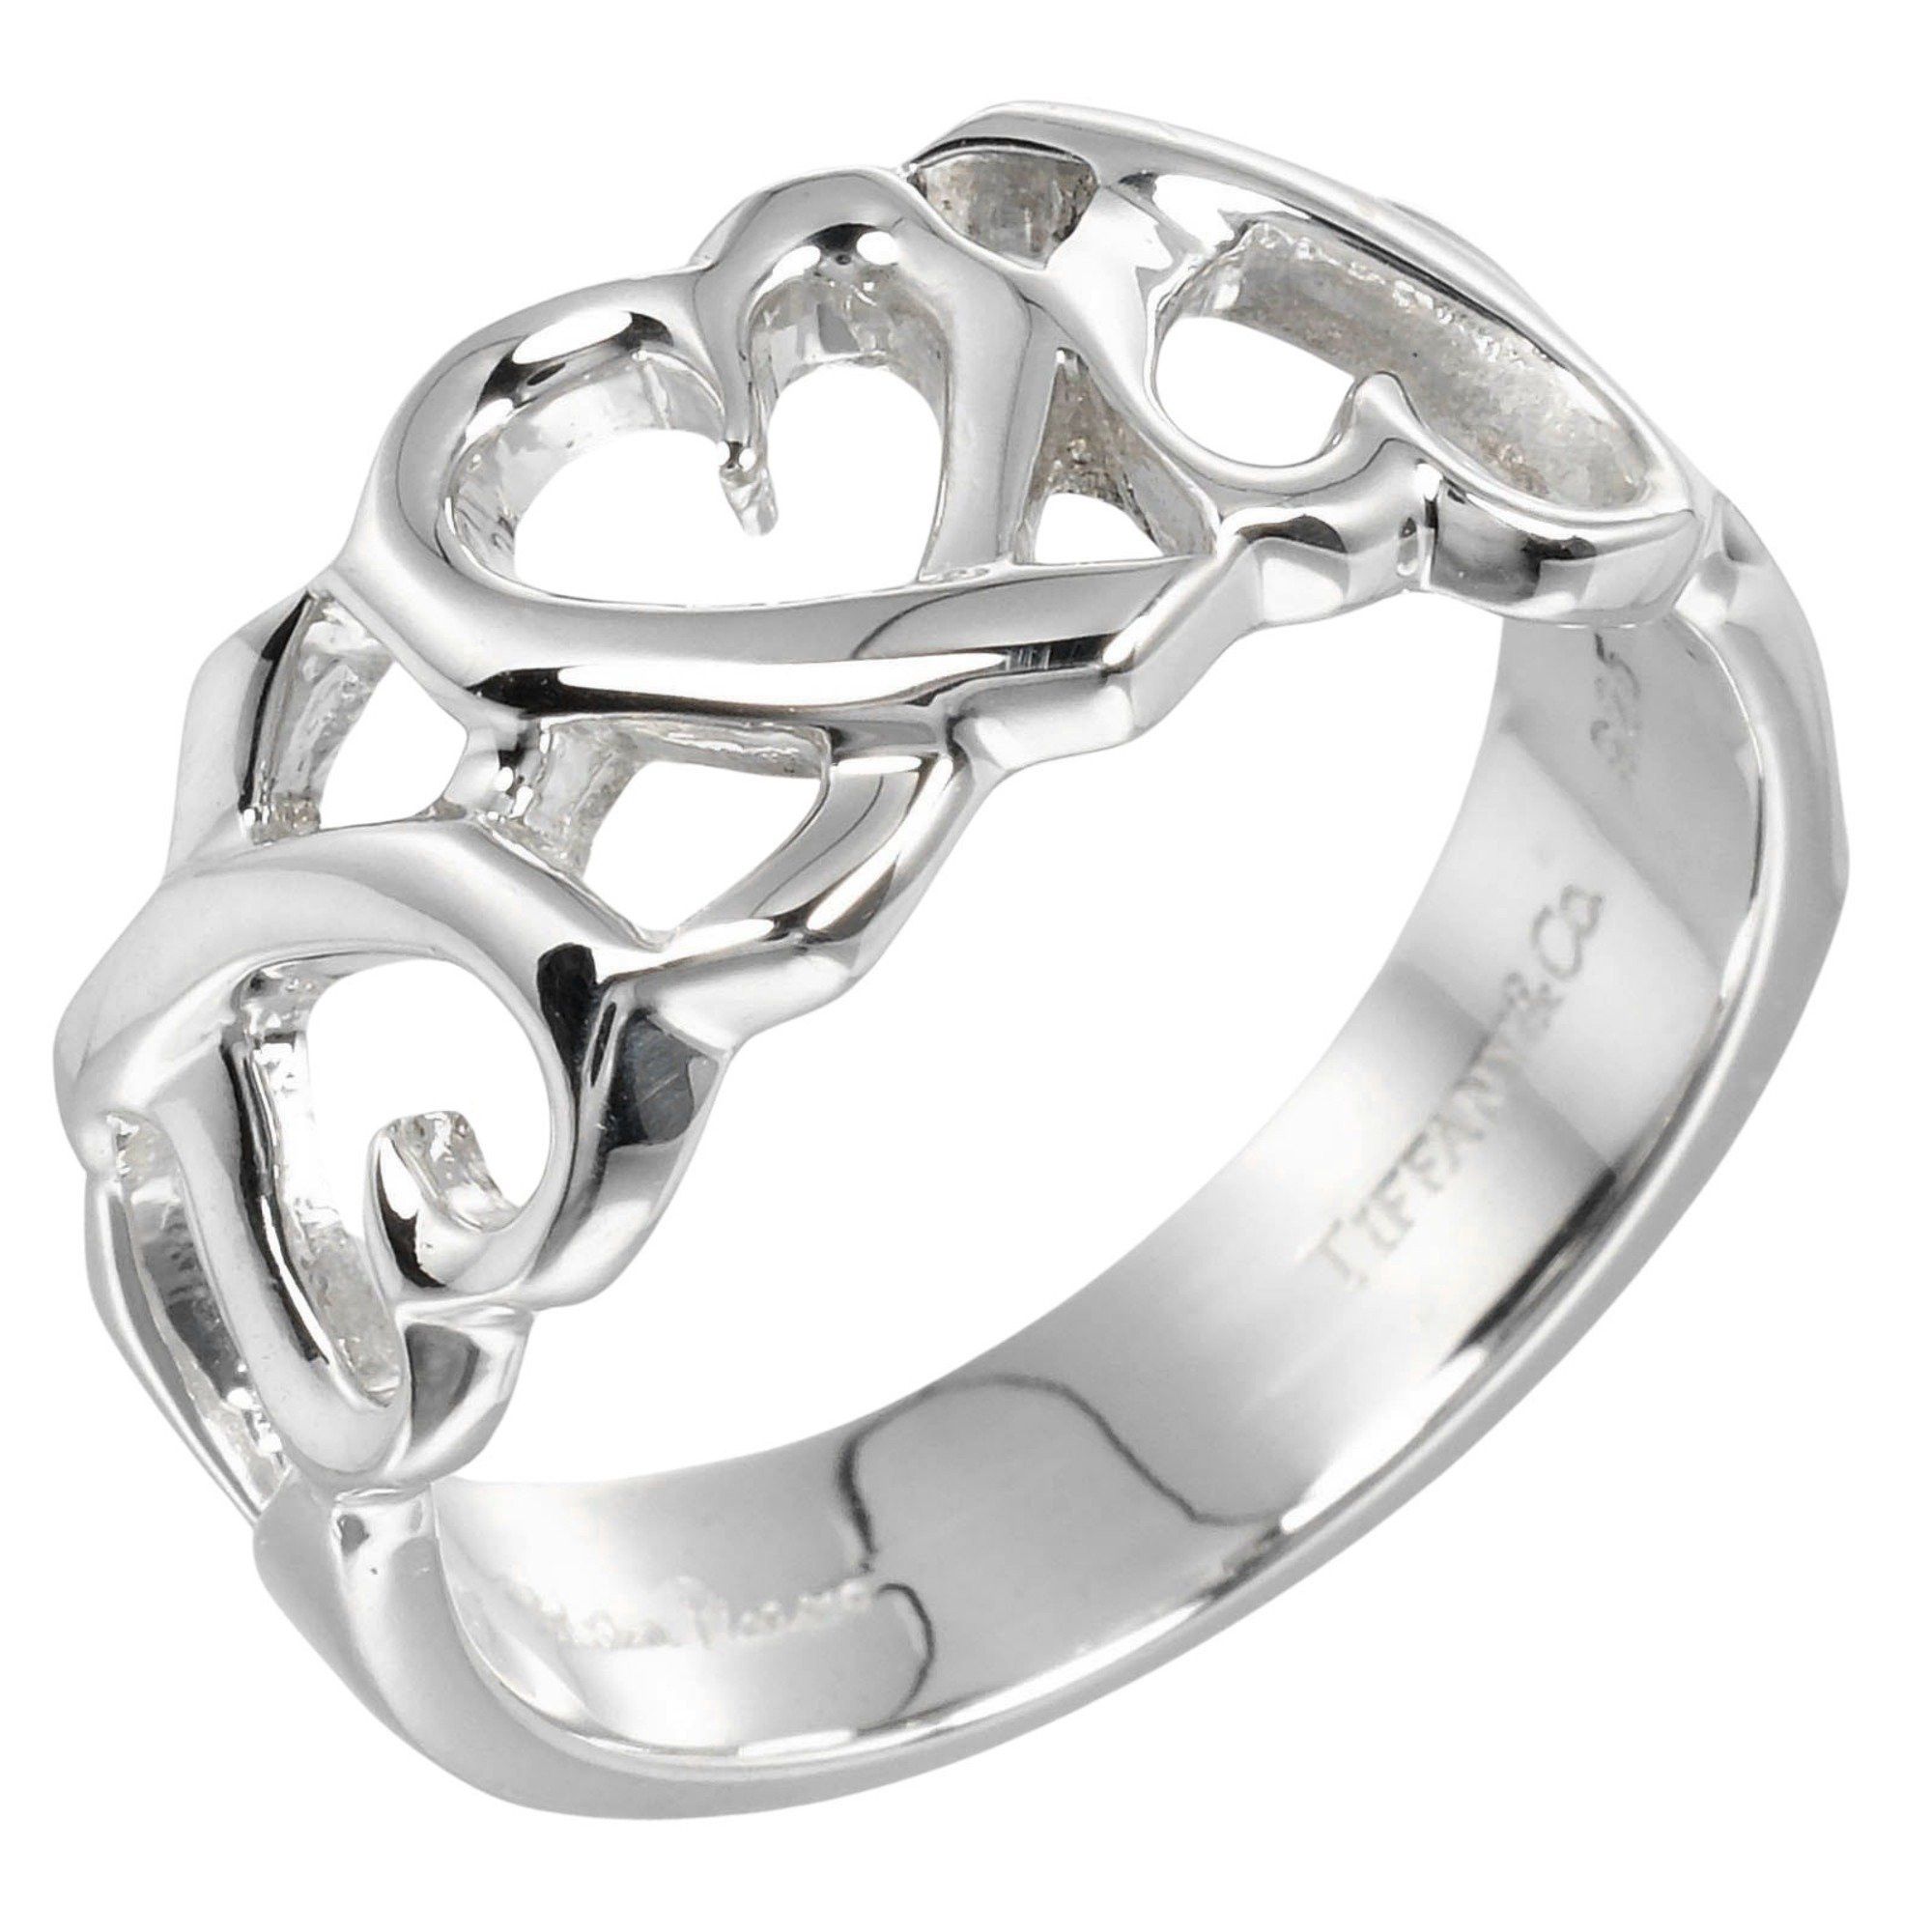 Tiffany & Co. Tiffany & Co. Triple Loving Heart Ring, Size 12 